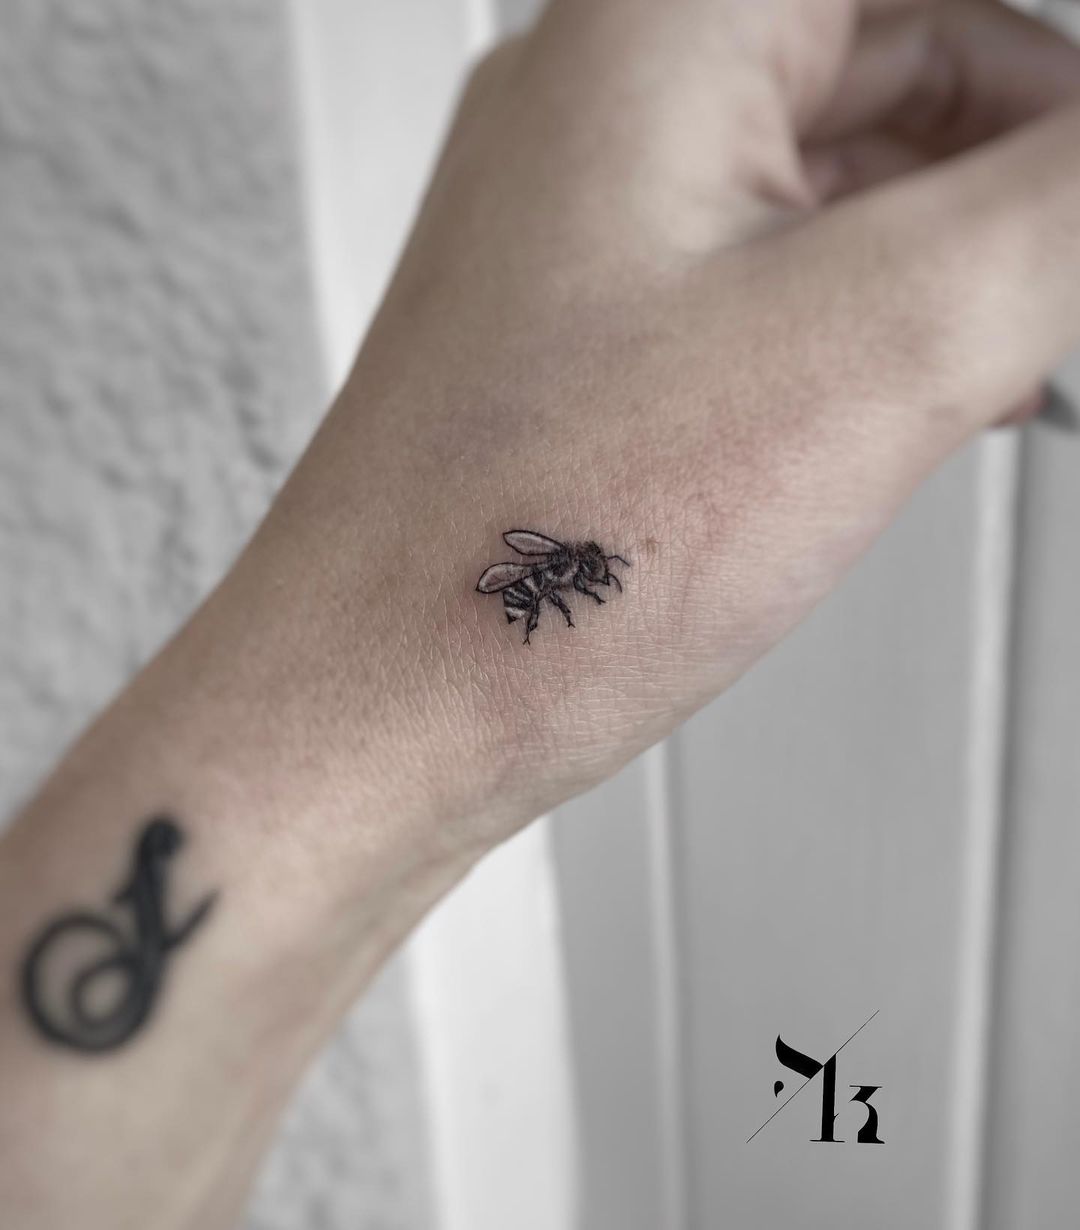 Tiny bee tattoo